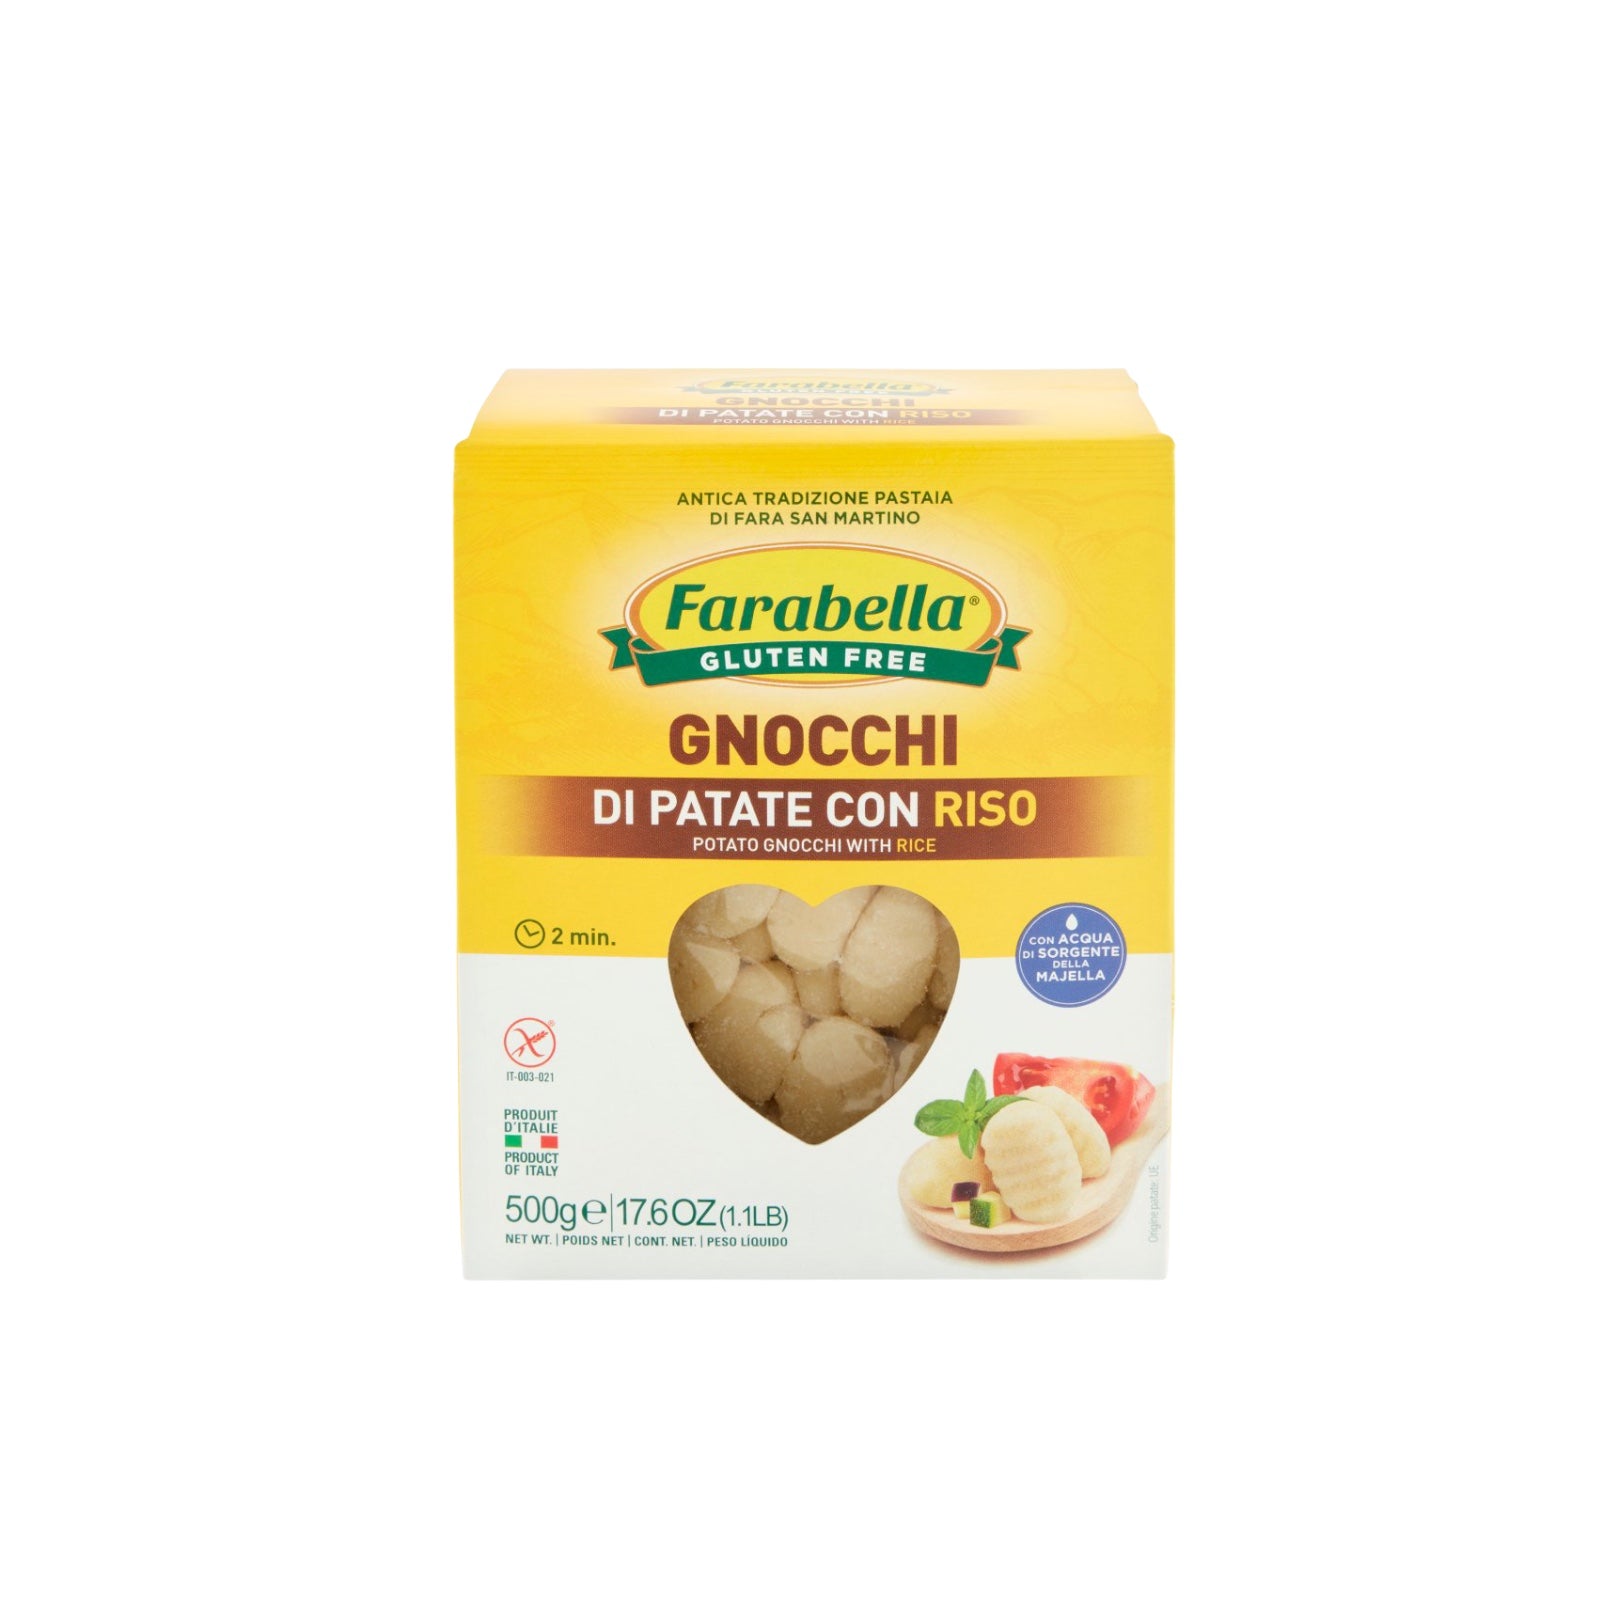 Farabella Gluten Free Potato Gnocchi with Rice 500g